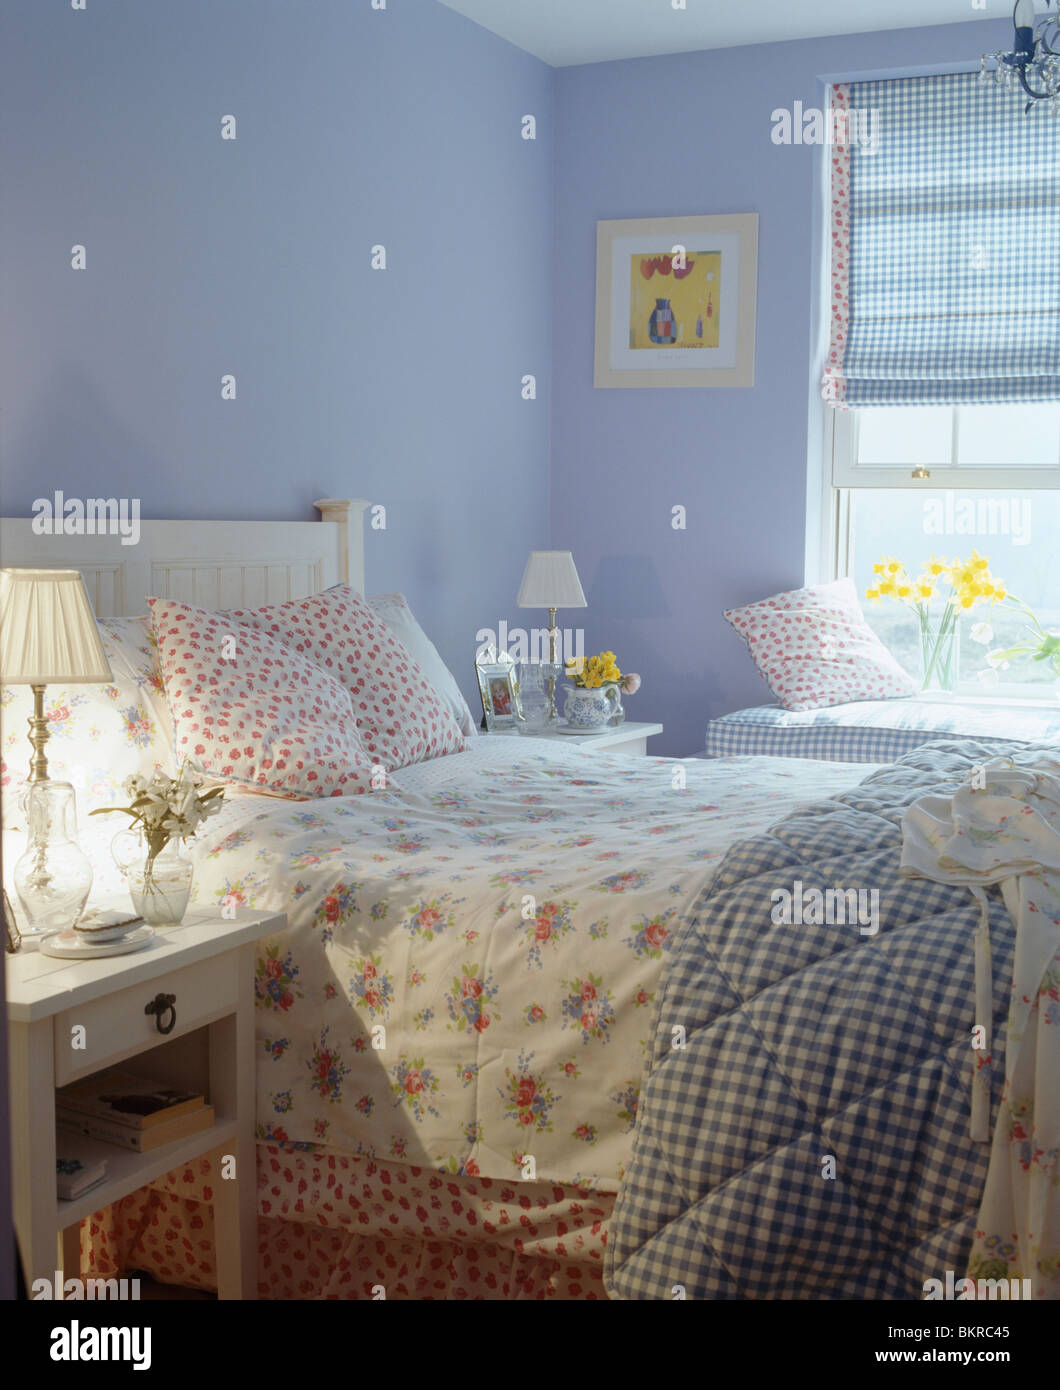 Floral biancheria da letto e verificato su quilt letto nel paese di malva camera da letto con blue cieco sulla finestra e acceso la lampada sul comodino Foto Stock